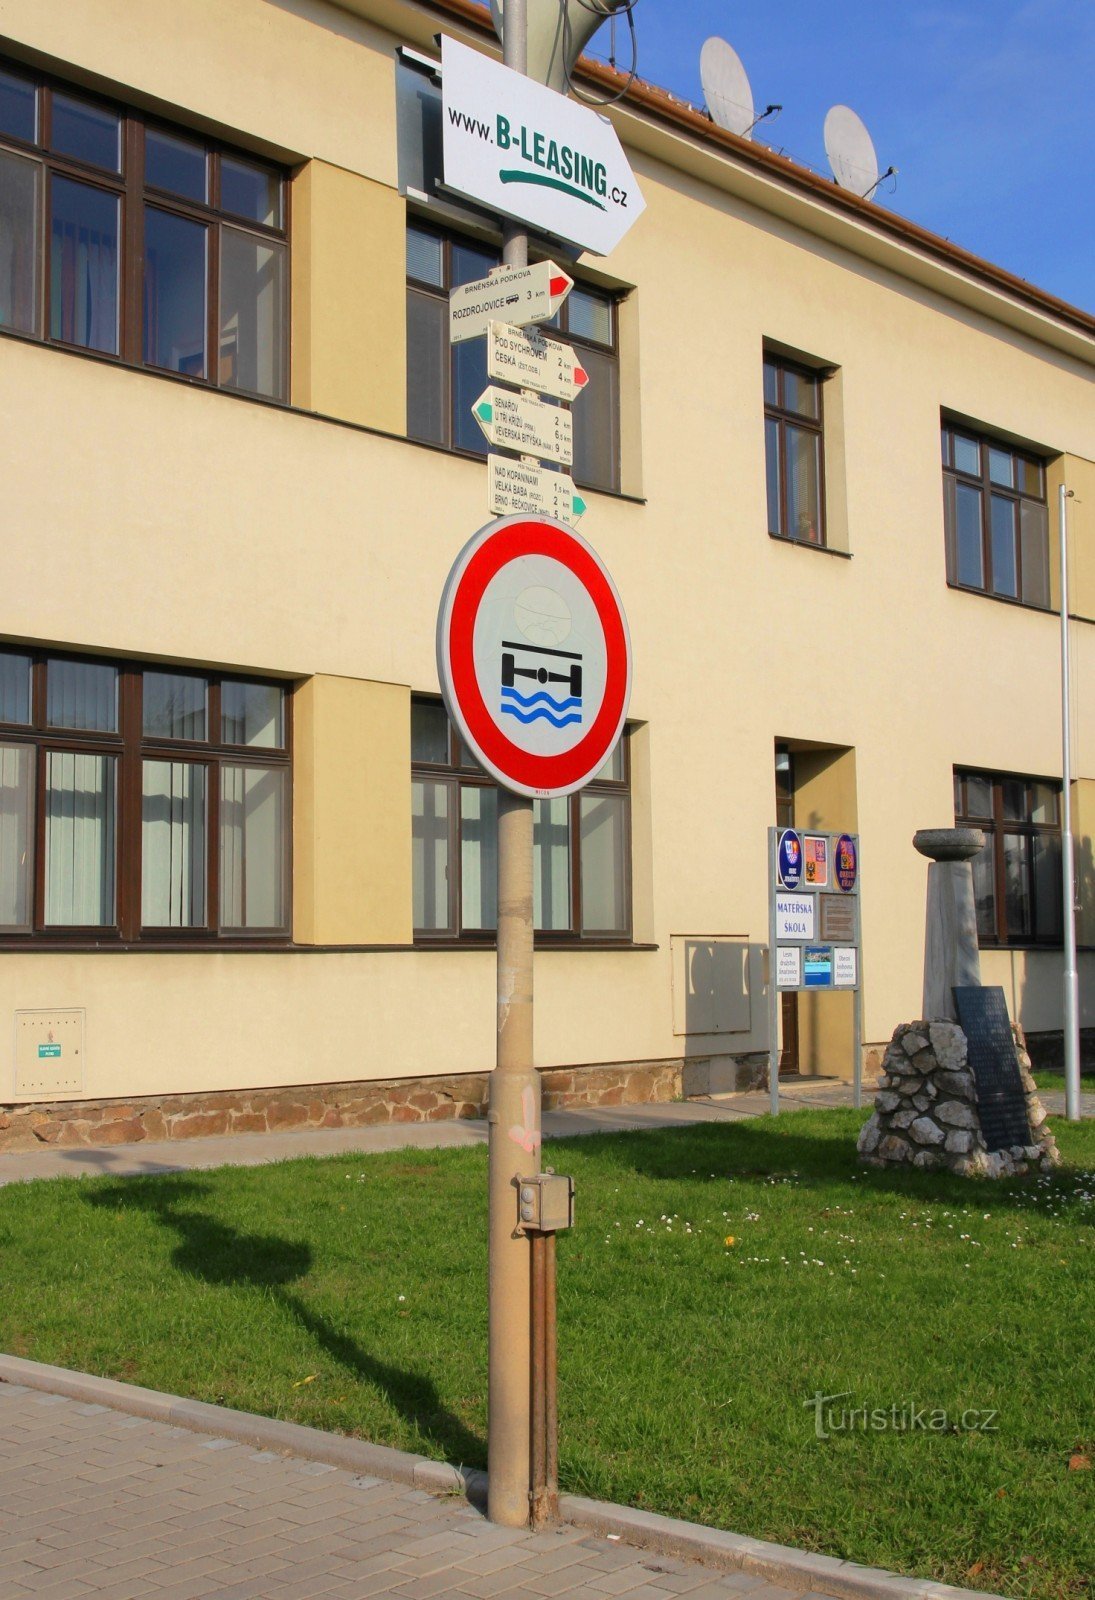 Jinačovice tourist crossroads